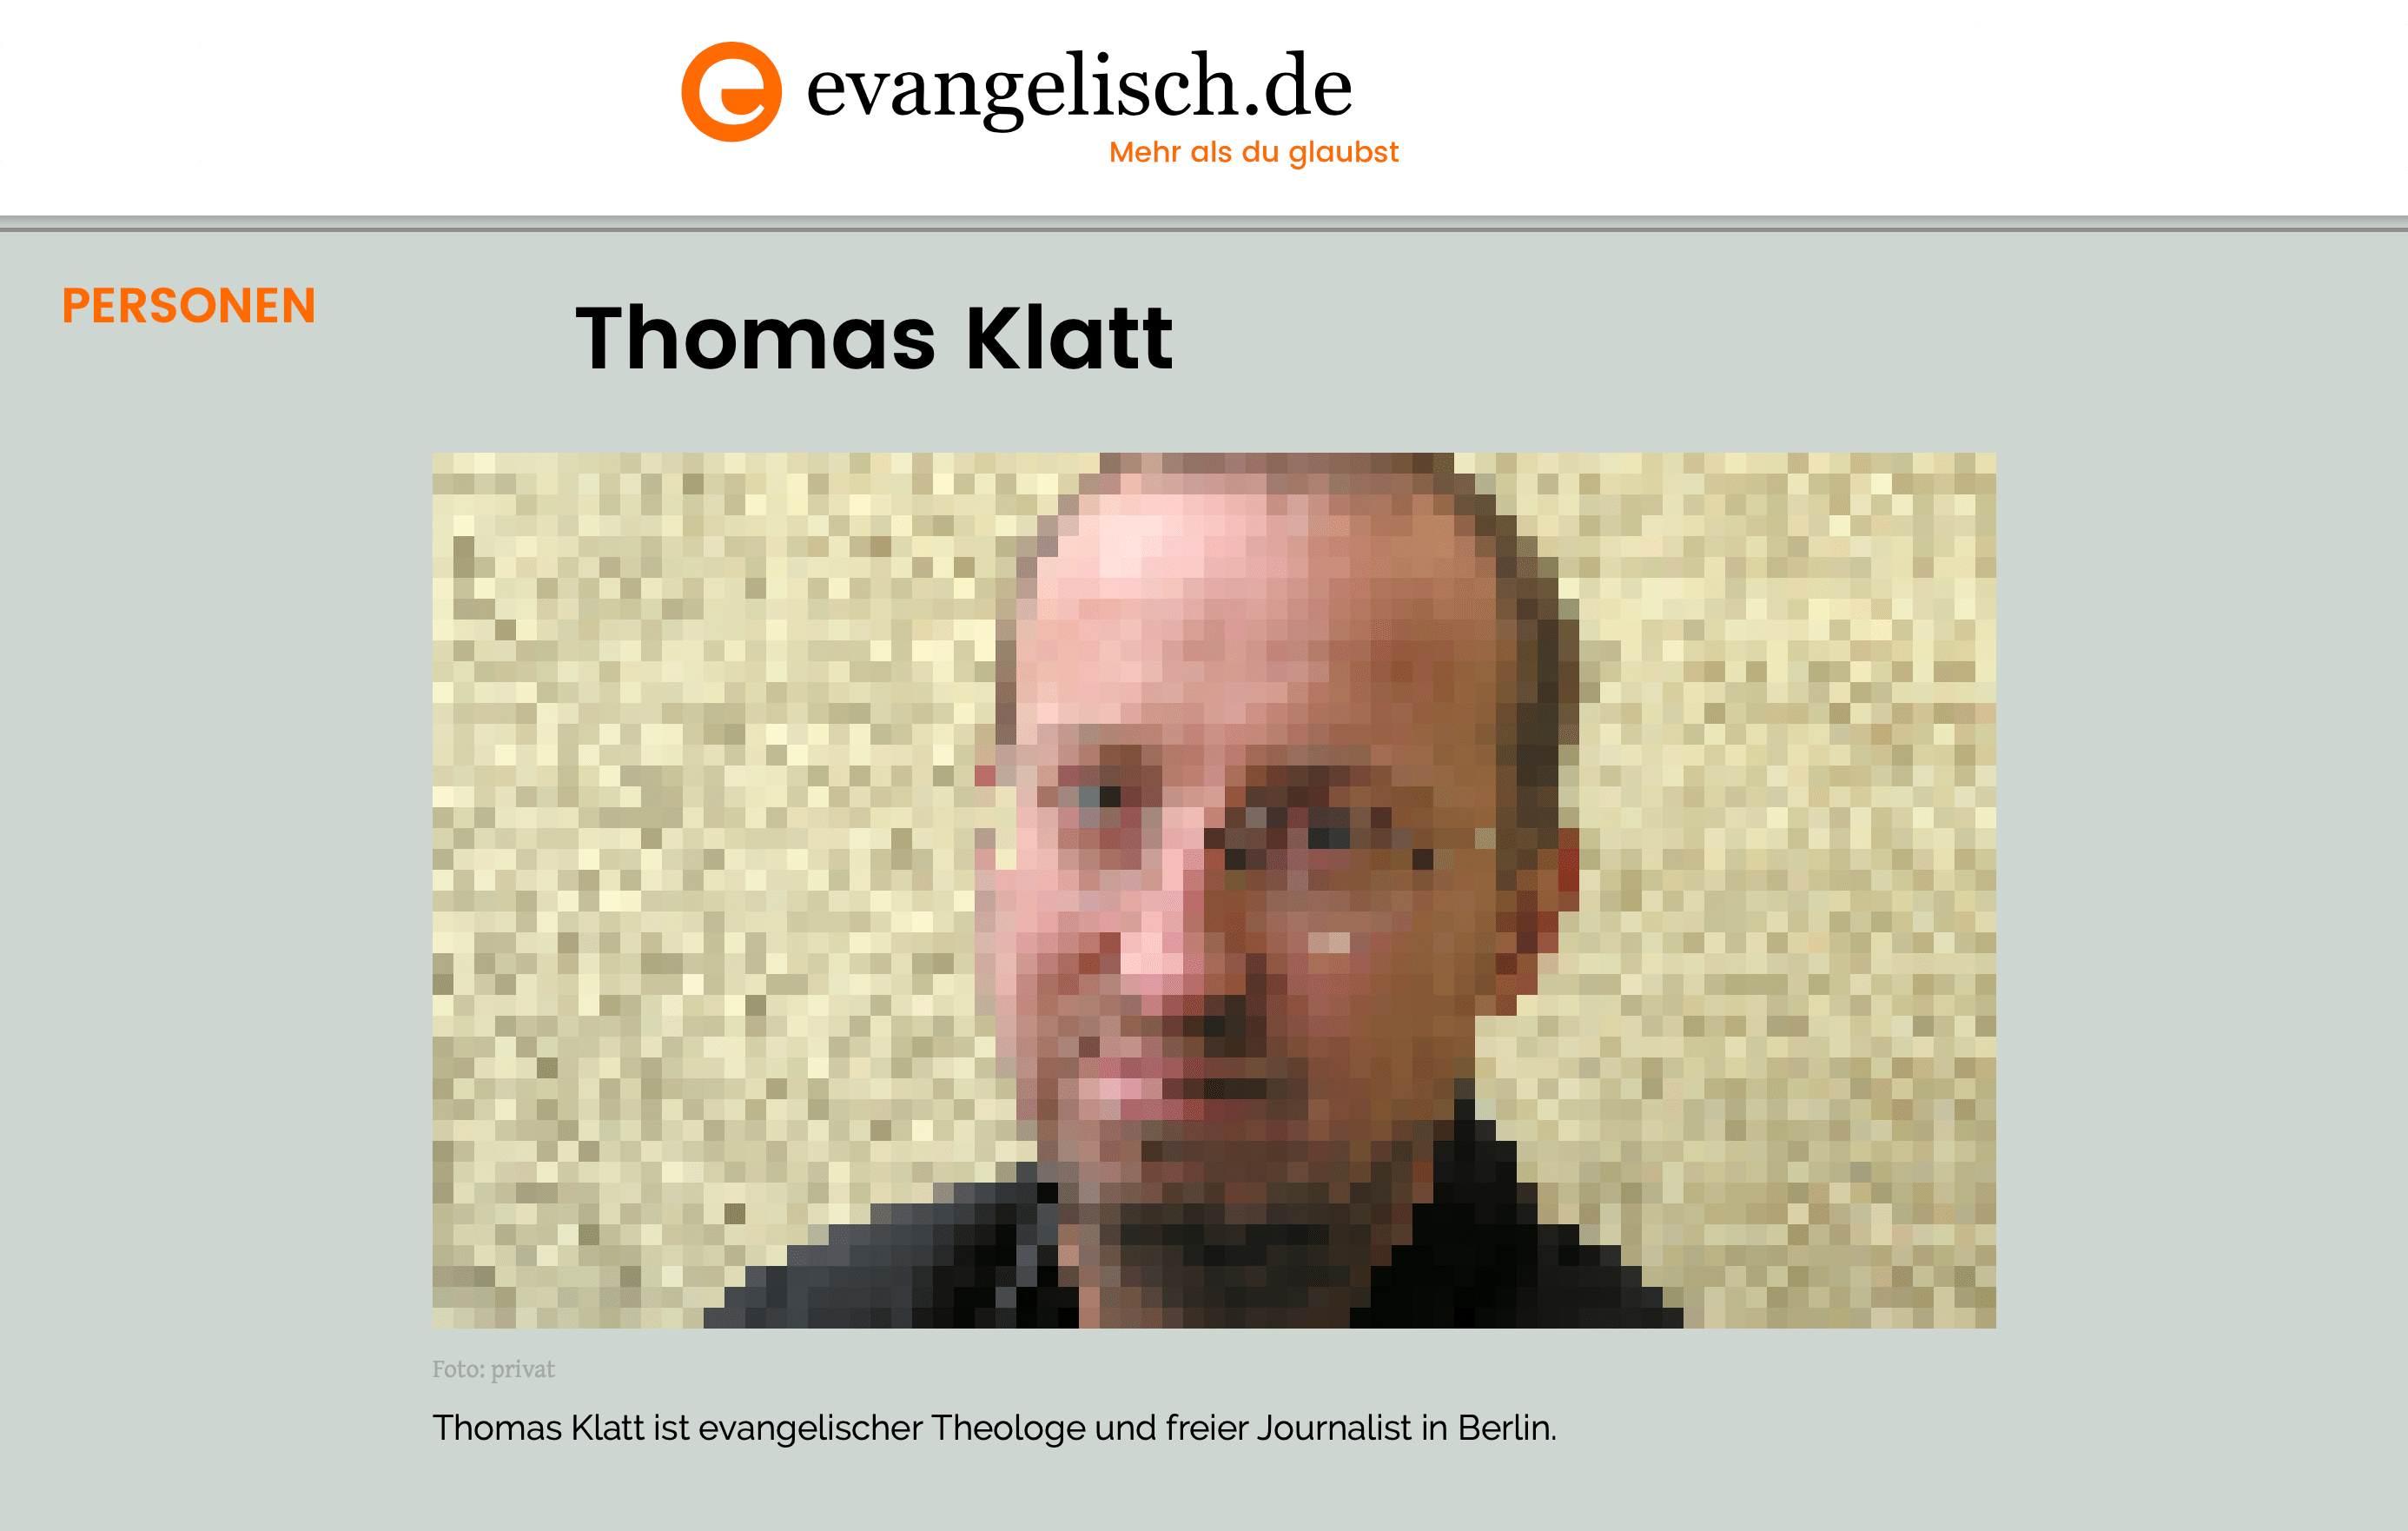 Berichtet über eine Klage gegen die Evangelische Kirche in Berlin: Der evangelische Theologe Thomas Klatt. (Foto aus urheberrechtlichen Gründen verpixelt.)